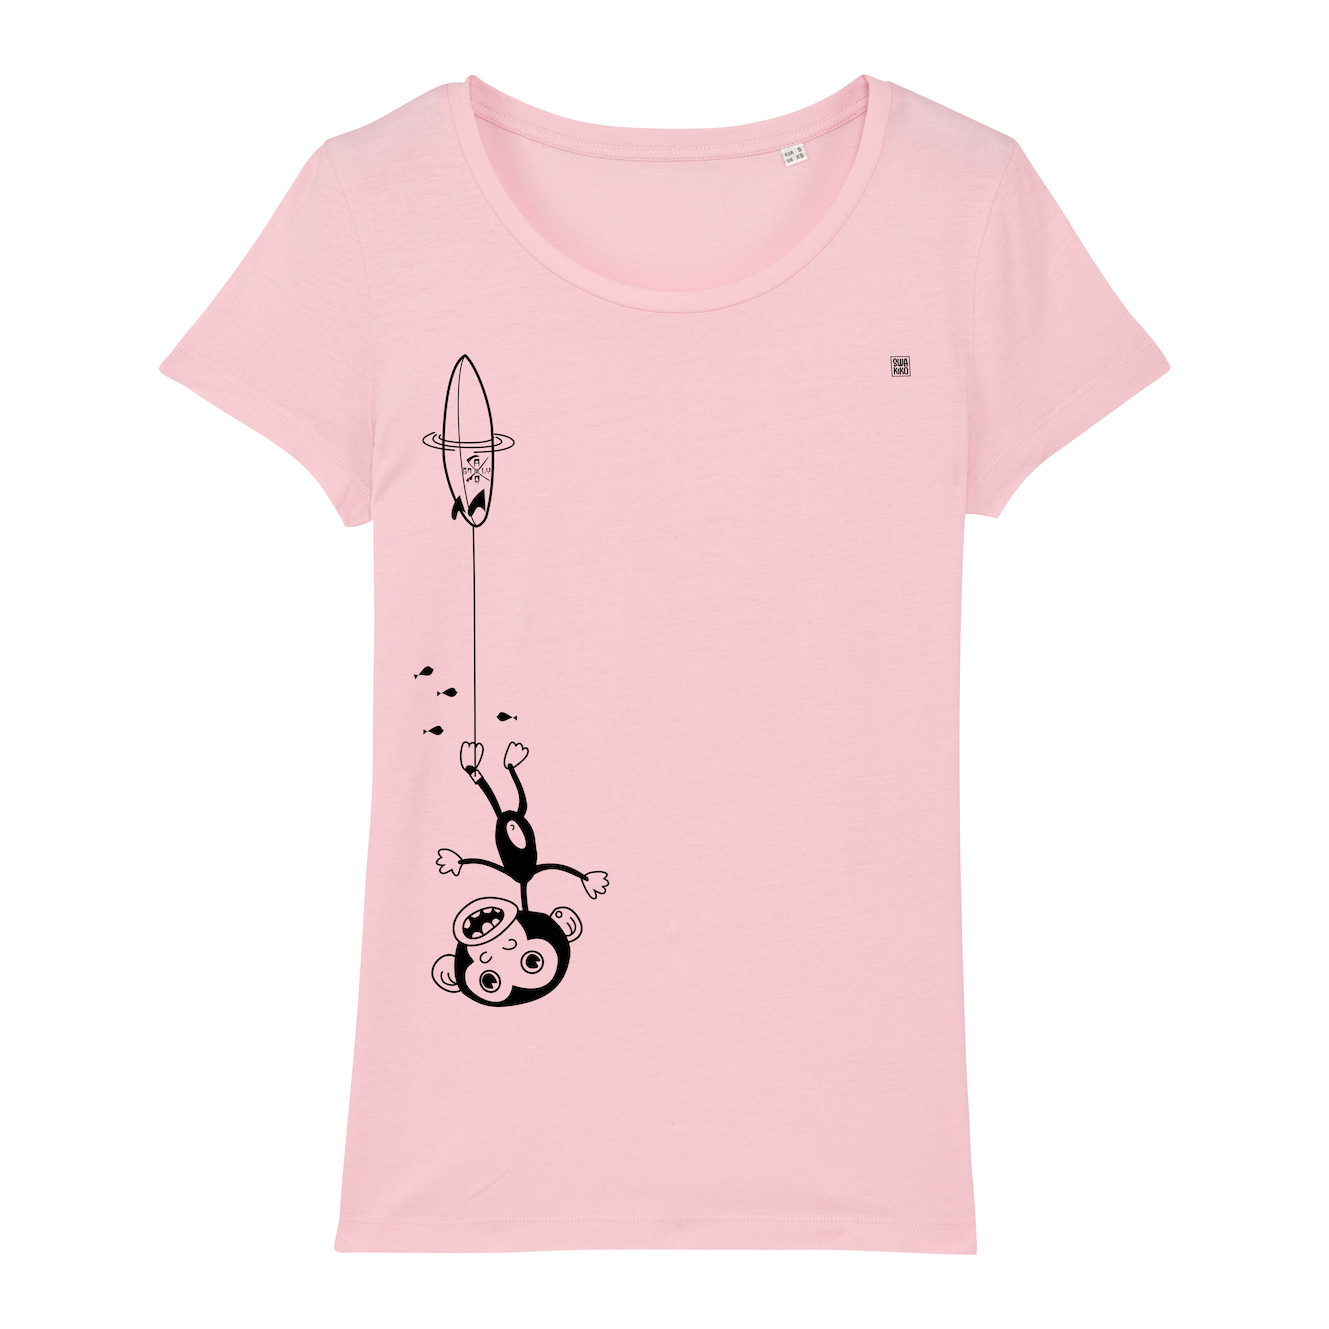 Surf t-shirt women, kook downunder, pink